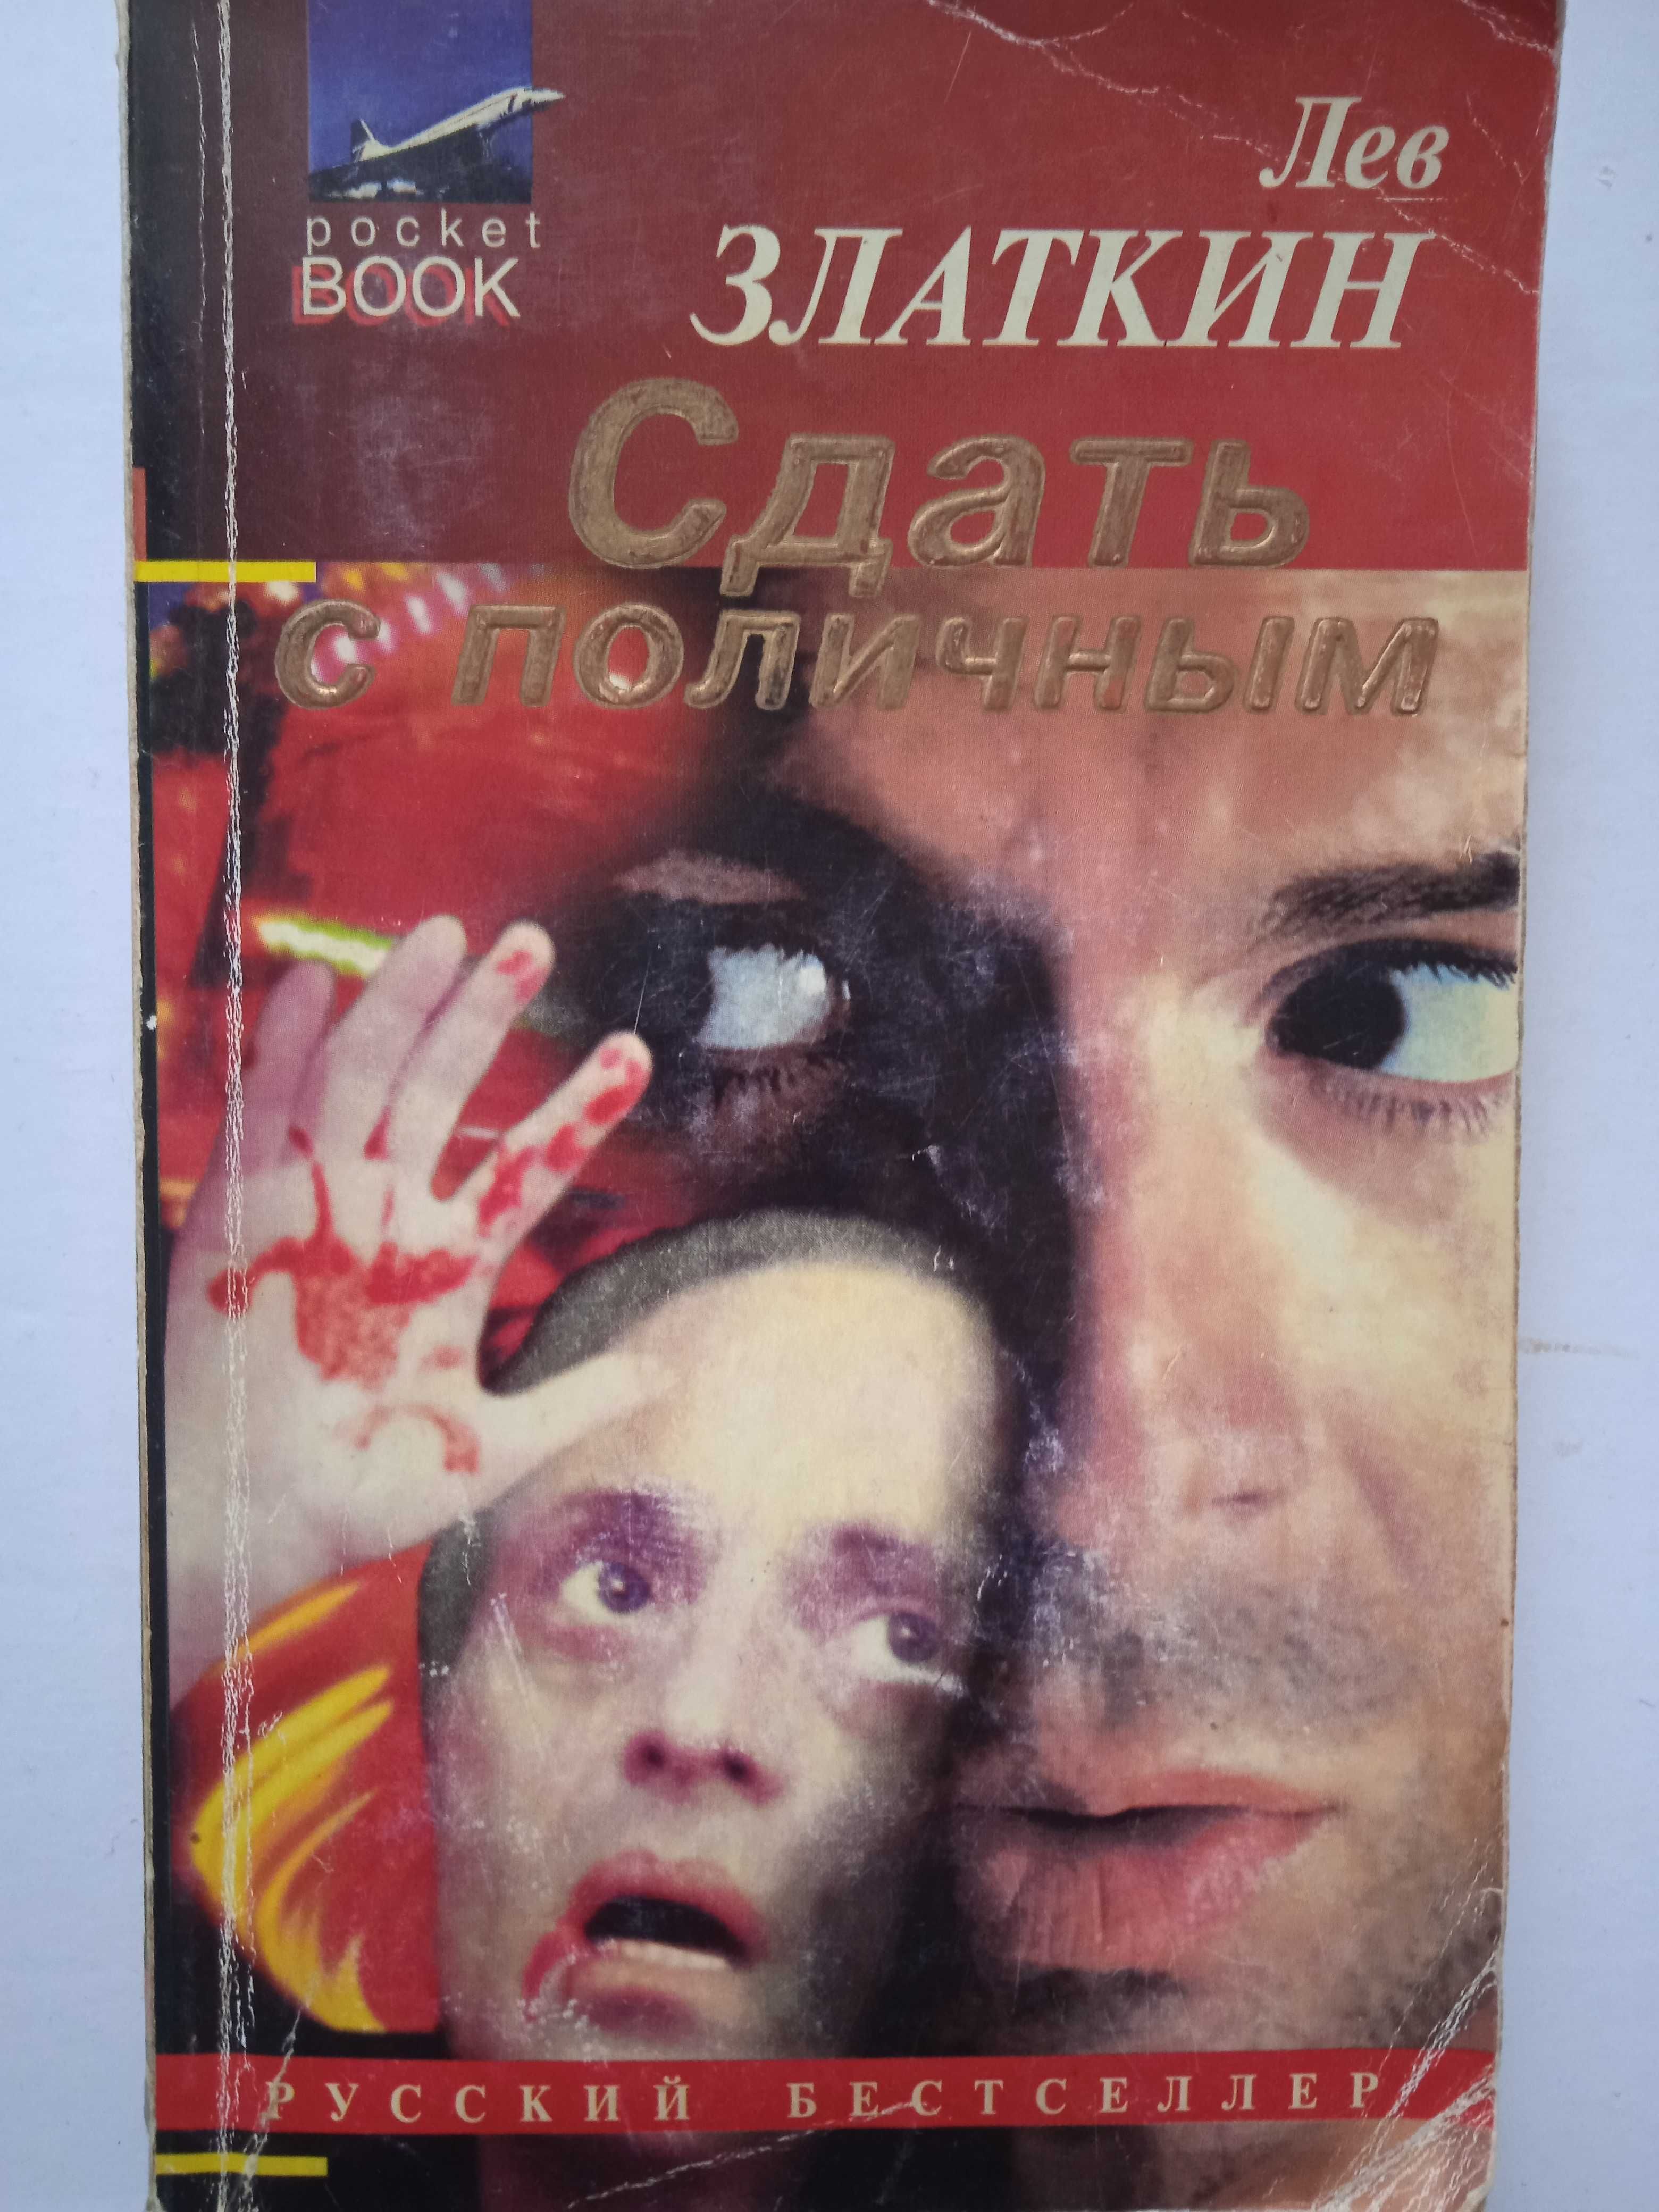 Книга: Лев Златкин  "Сдать с поличным", повесть, 1995, 320с